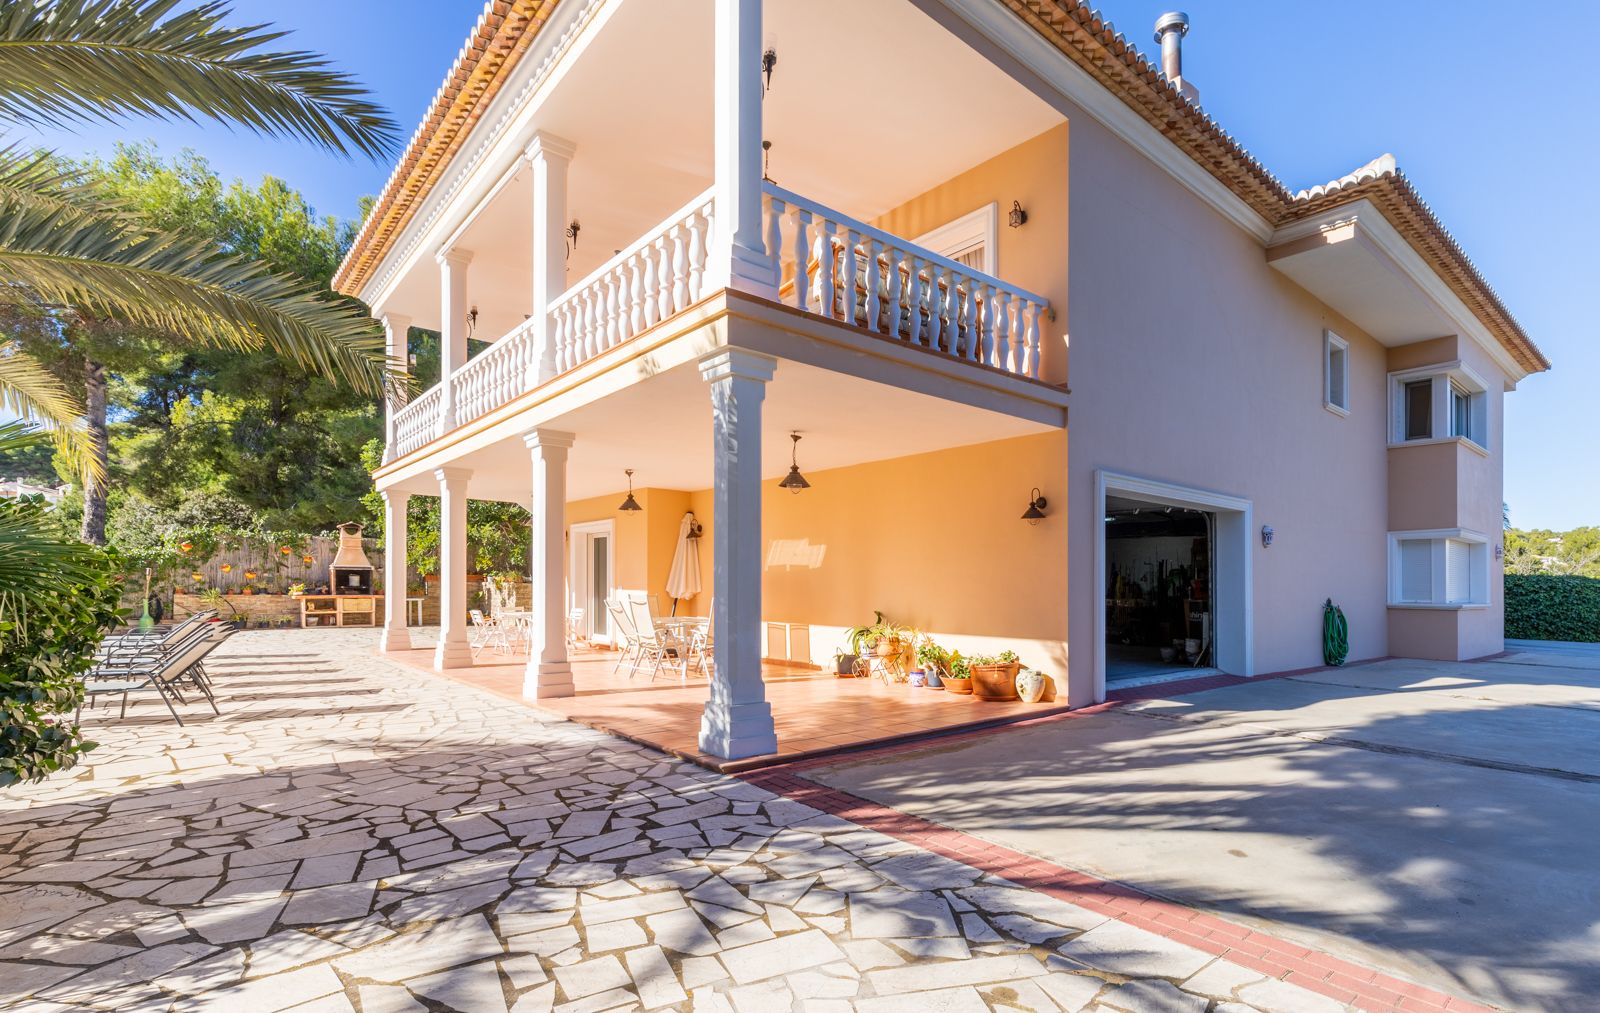 Villa de estilo mediterráneo a la venta en Moraira